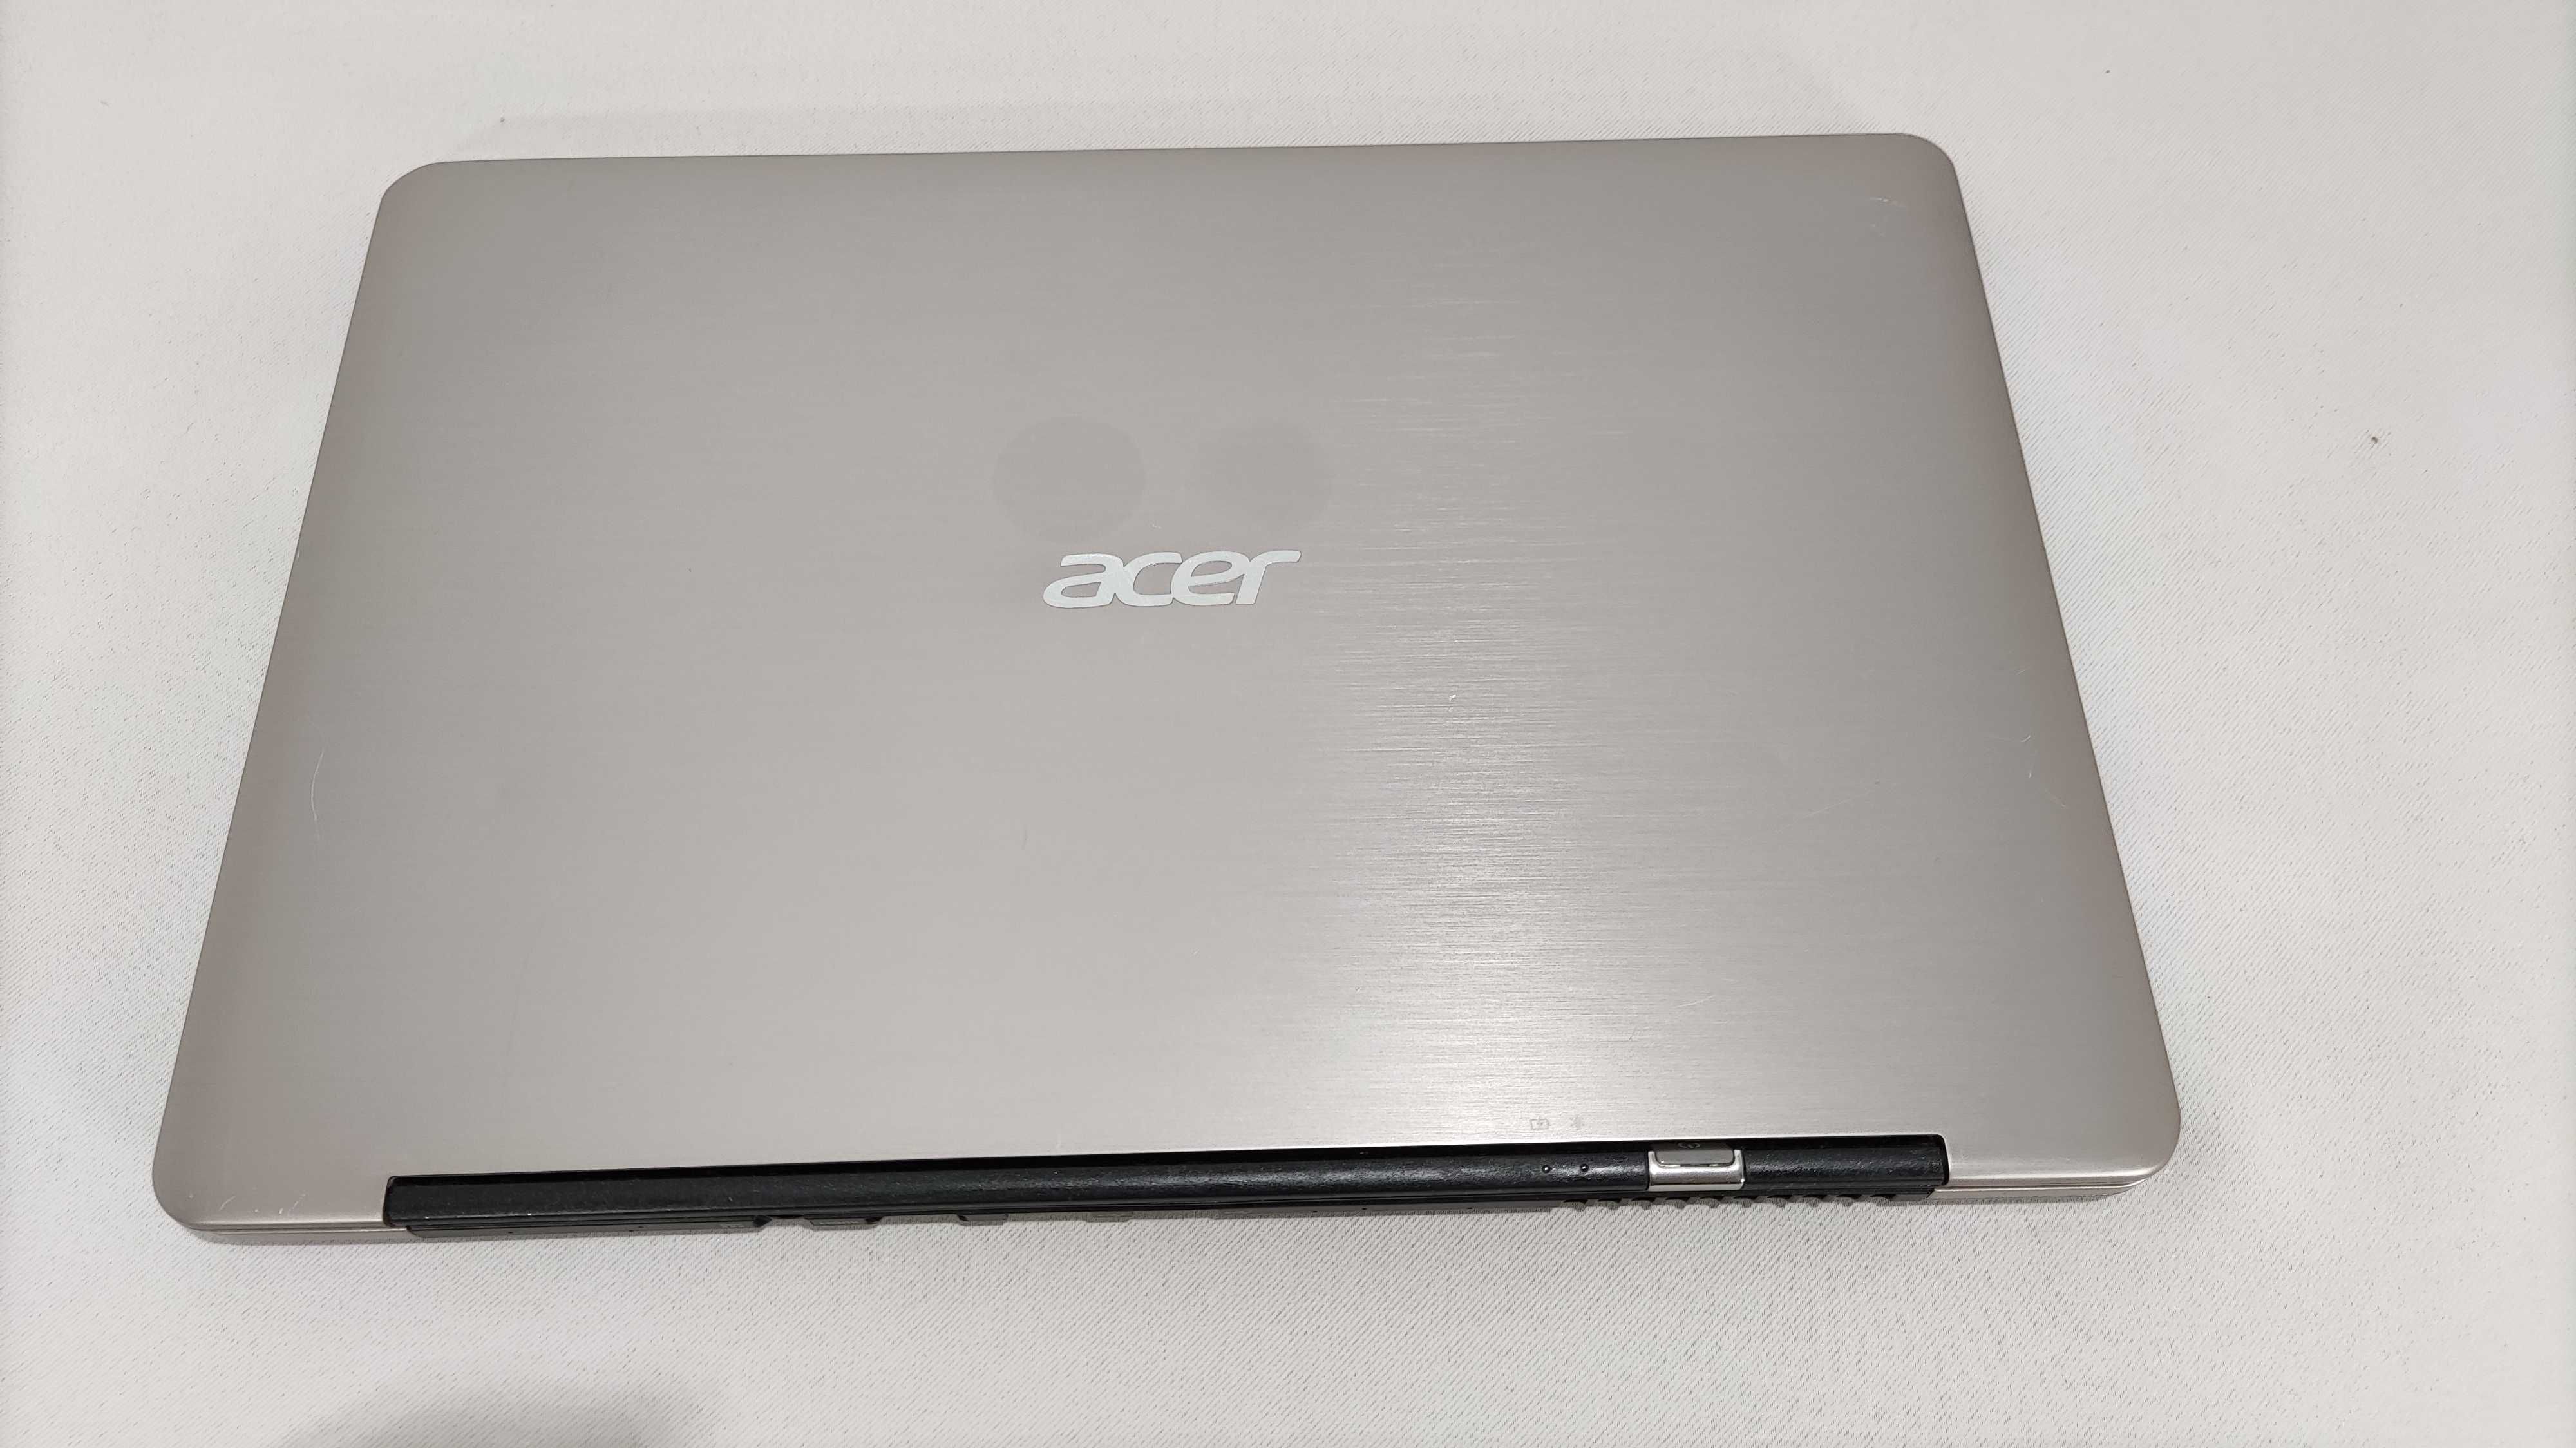 Acer Aspire 5750G 15.6" i7 2620M 3.4GHz 500Gb HHD GeForce 610M